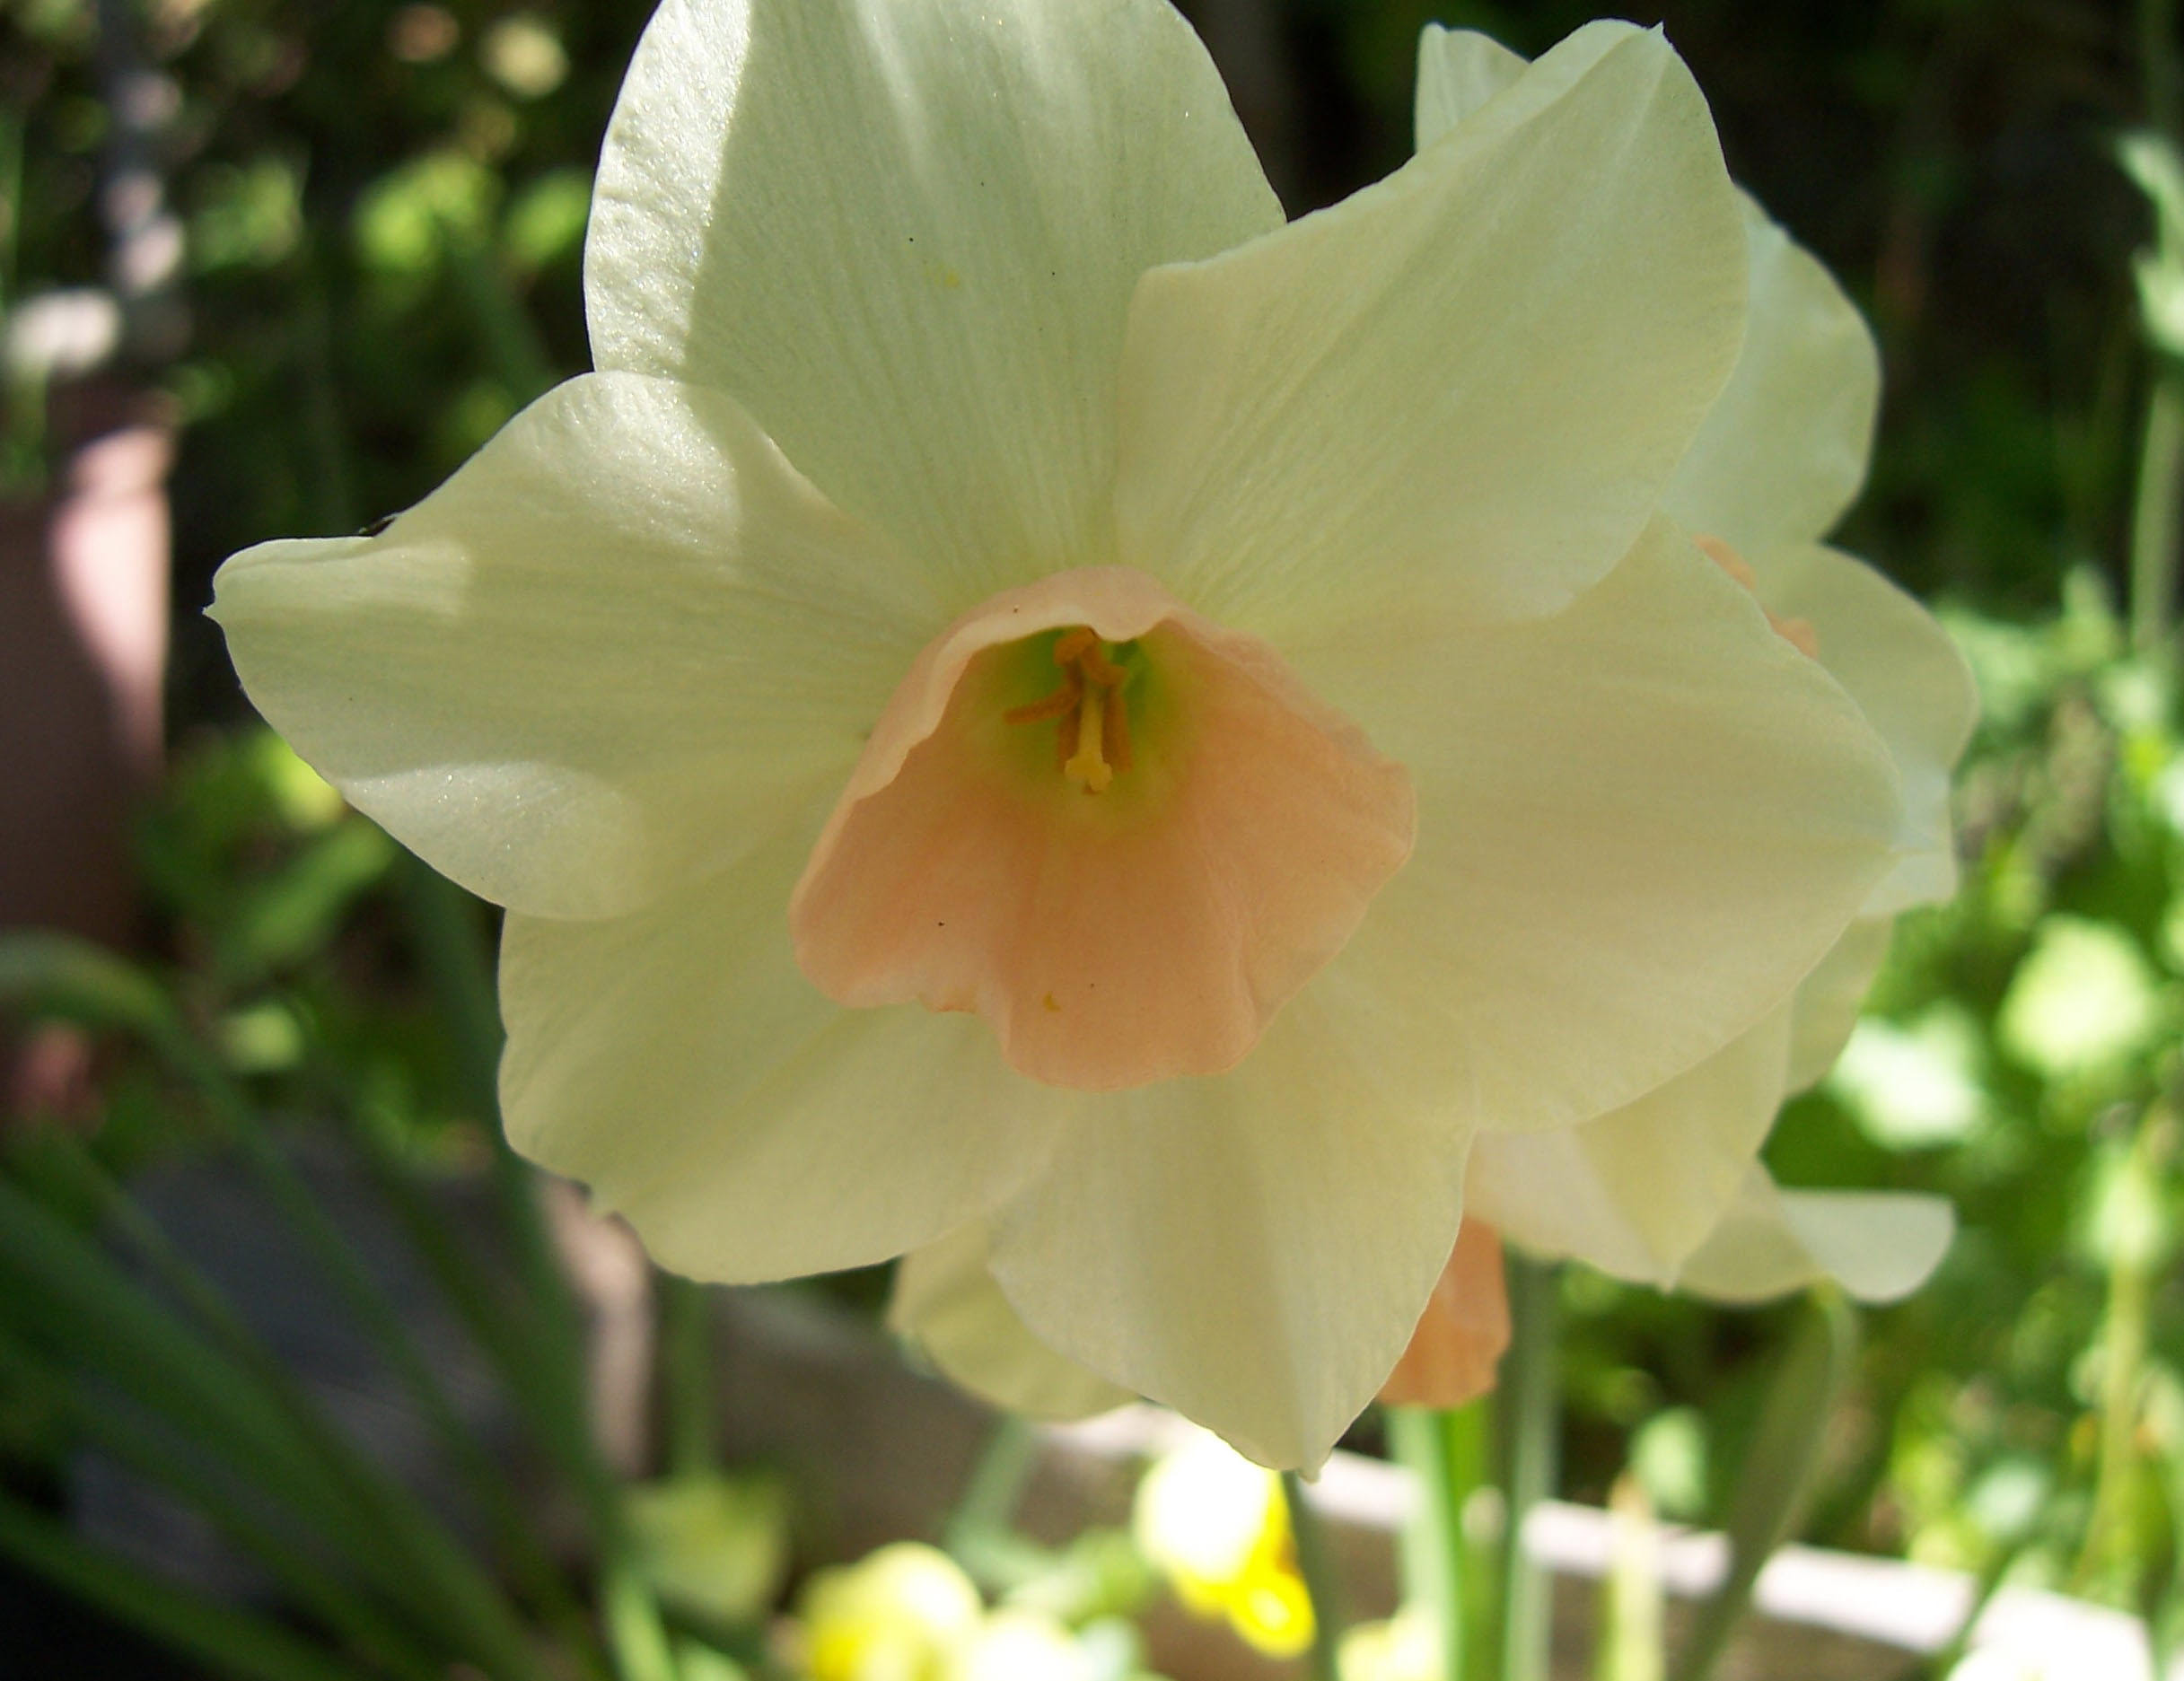 Fleurs de mon jardin : Narcisse

